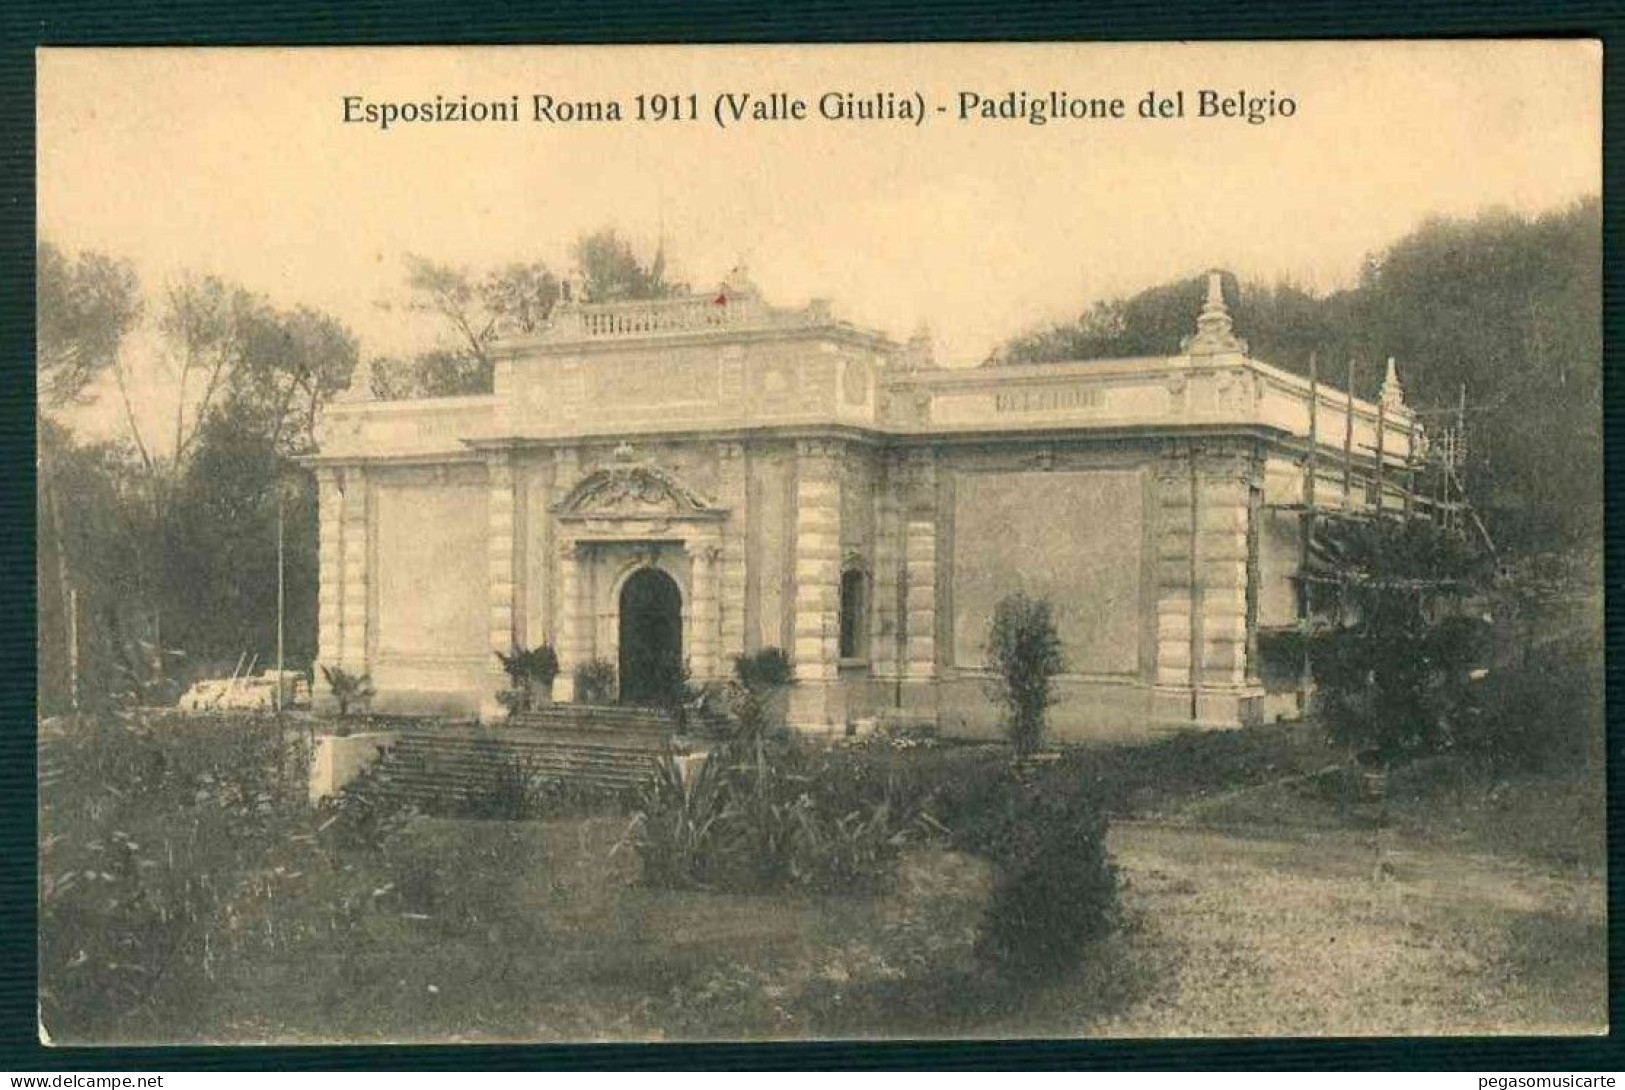 VX233 - ESPOSIZIONI ROMA 1911 (VALLE GIULIA) - PADIGLIONE DEL BELGIO - Exhibitions